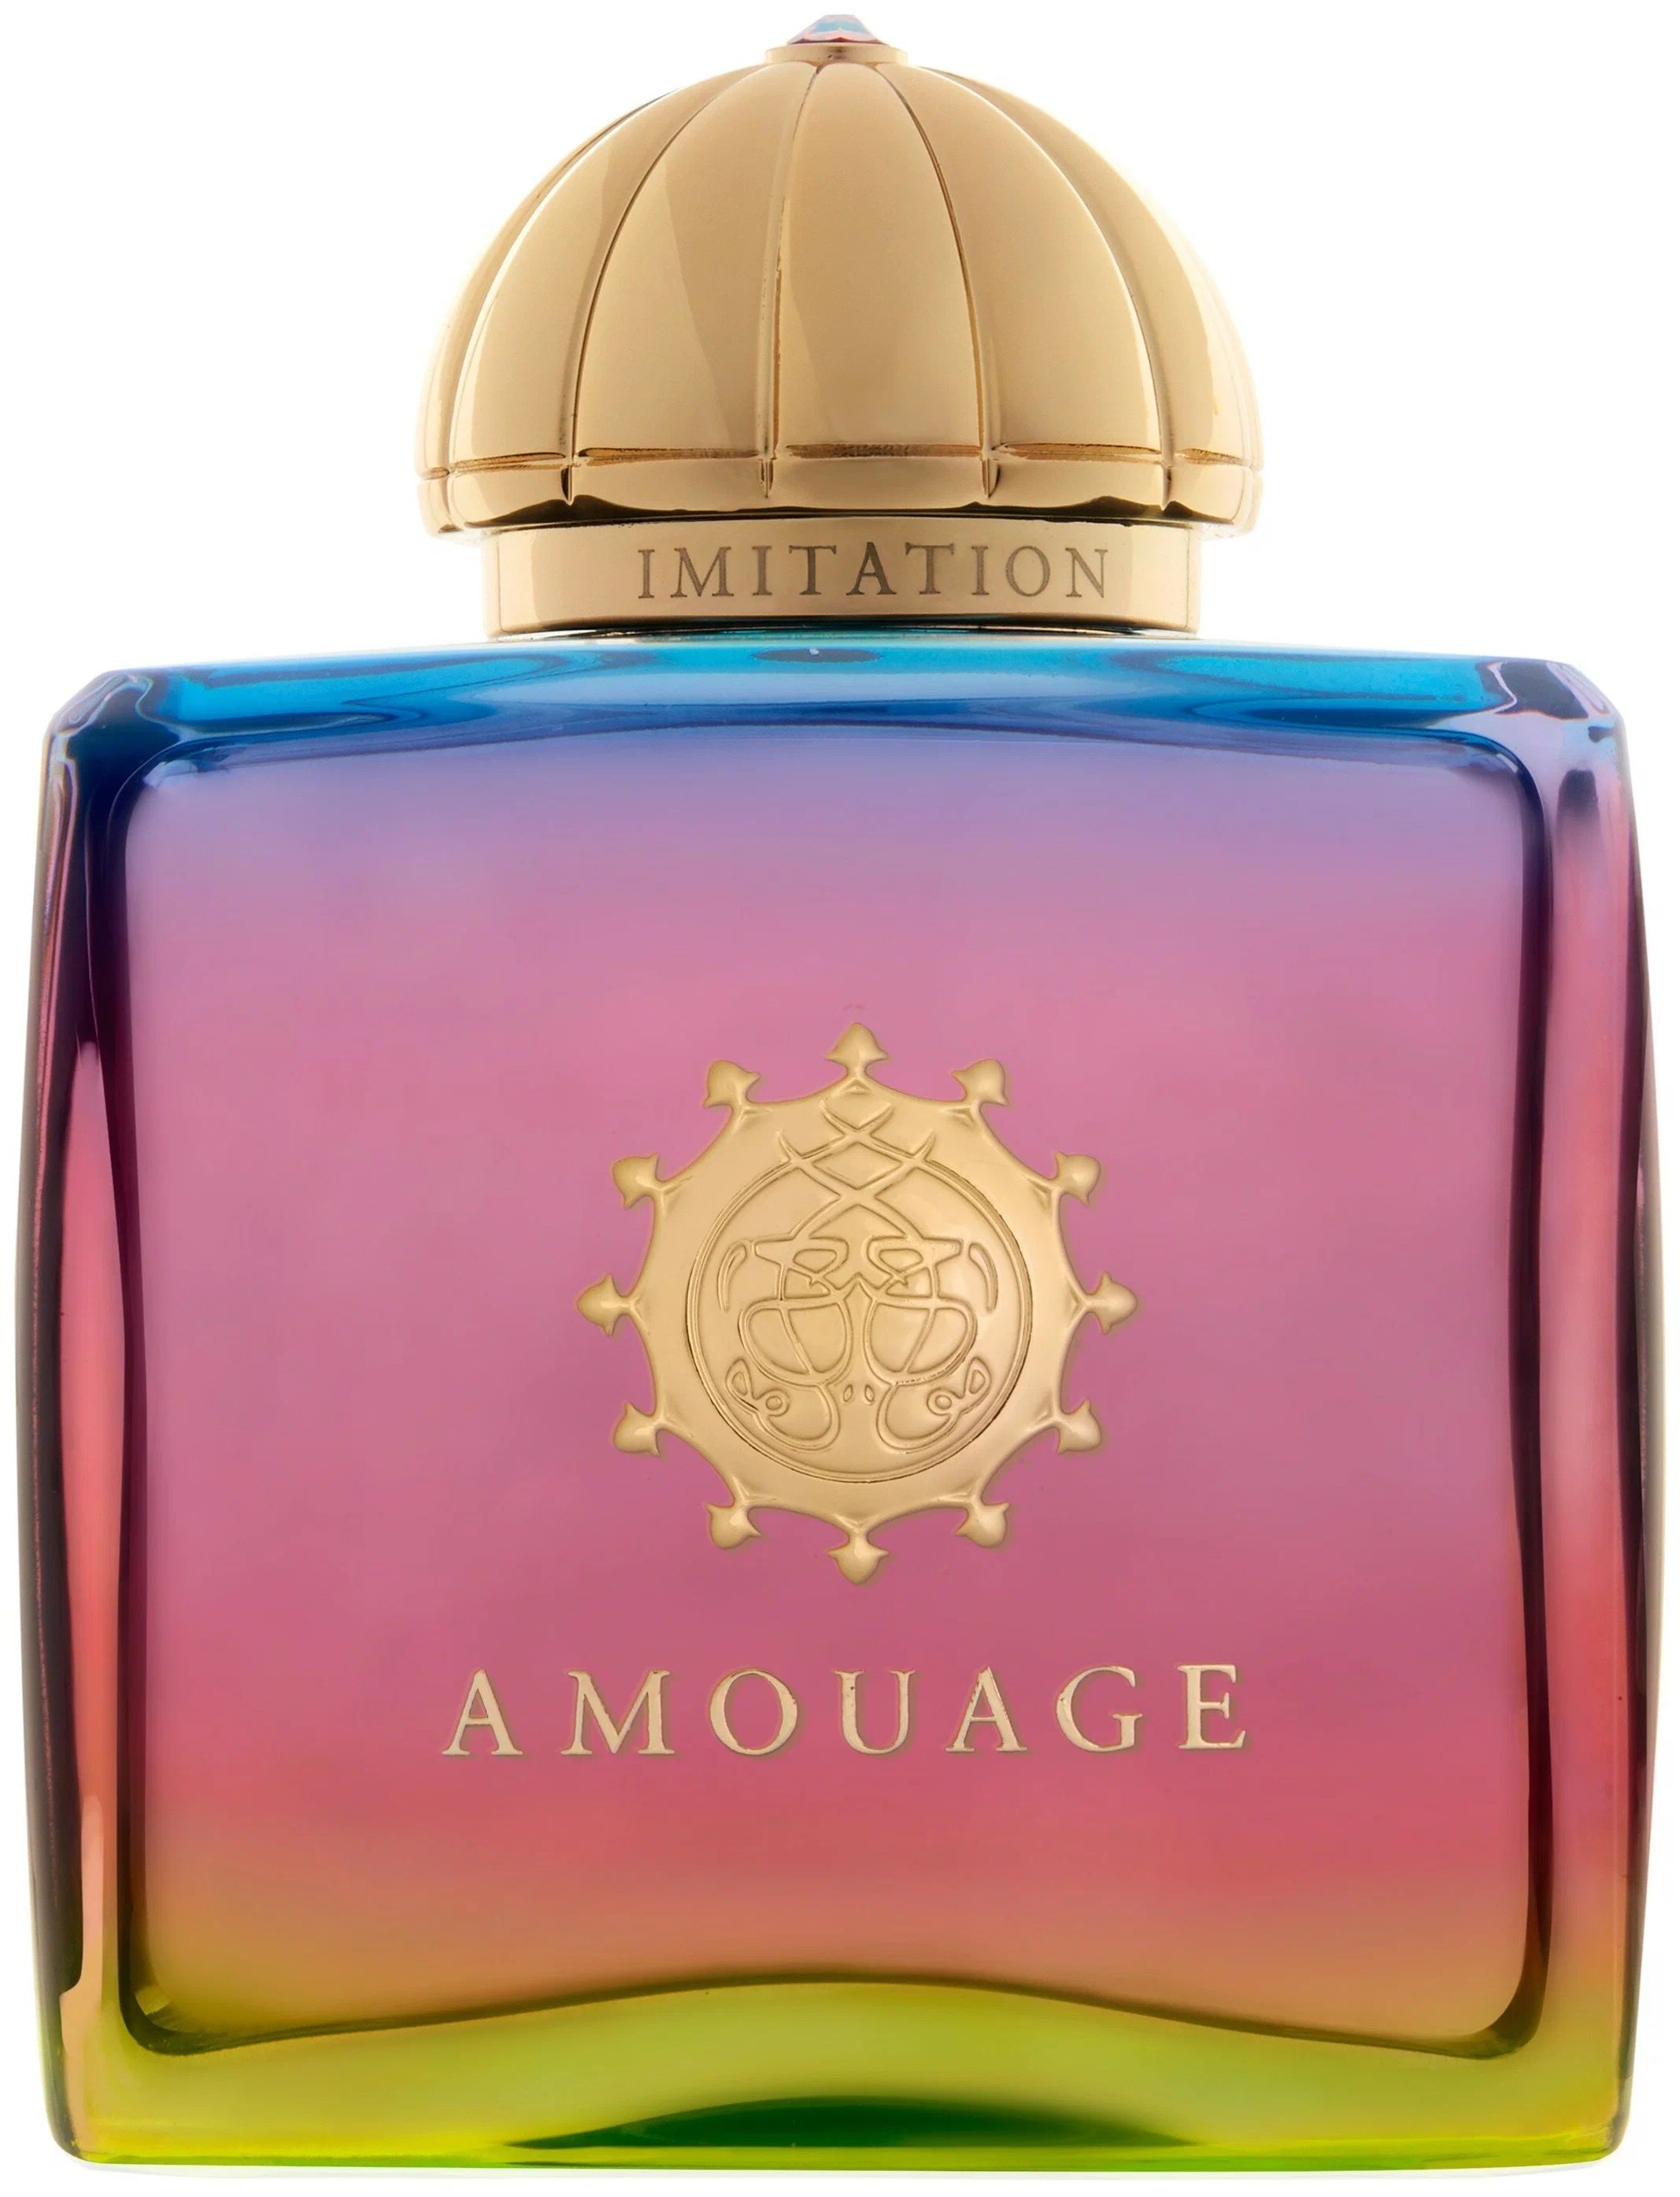 Вода парфюмерная Amouage Imitation, женская, 100 мл imitation democracy